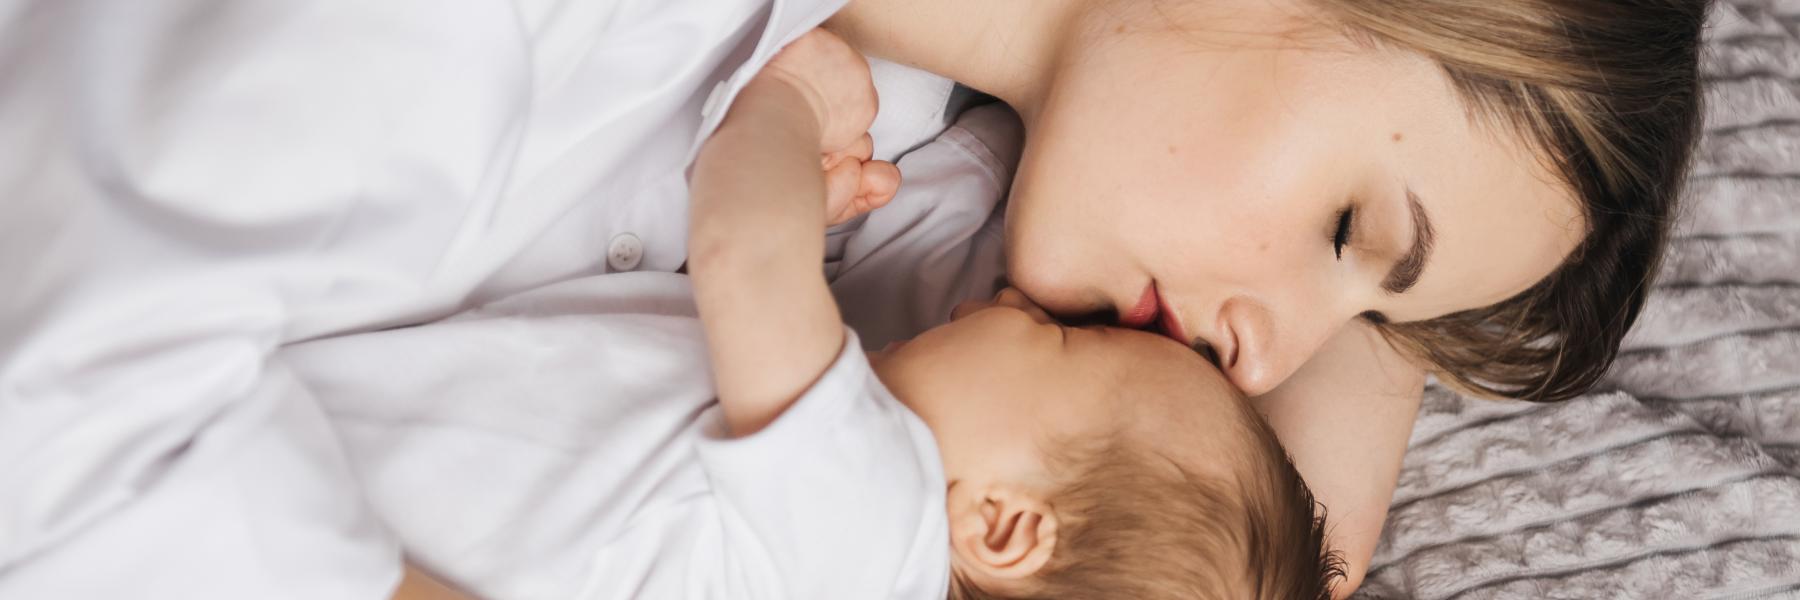 هل يمكنك النوم بجانب طفلك الرضيع؟ إليك 7 إرشادات لفعل ذلك بأمان